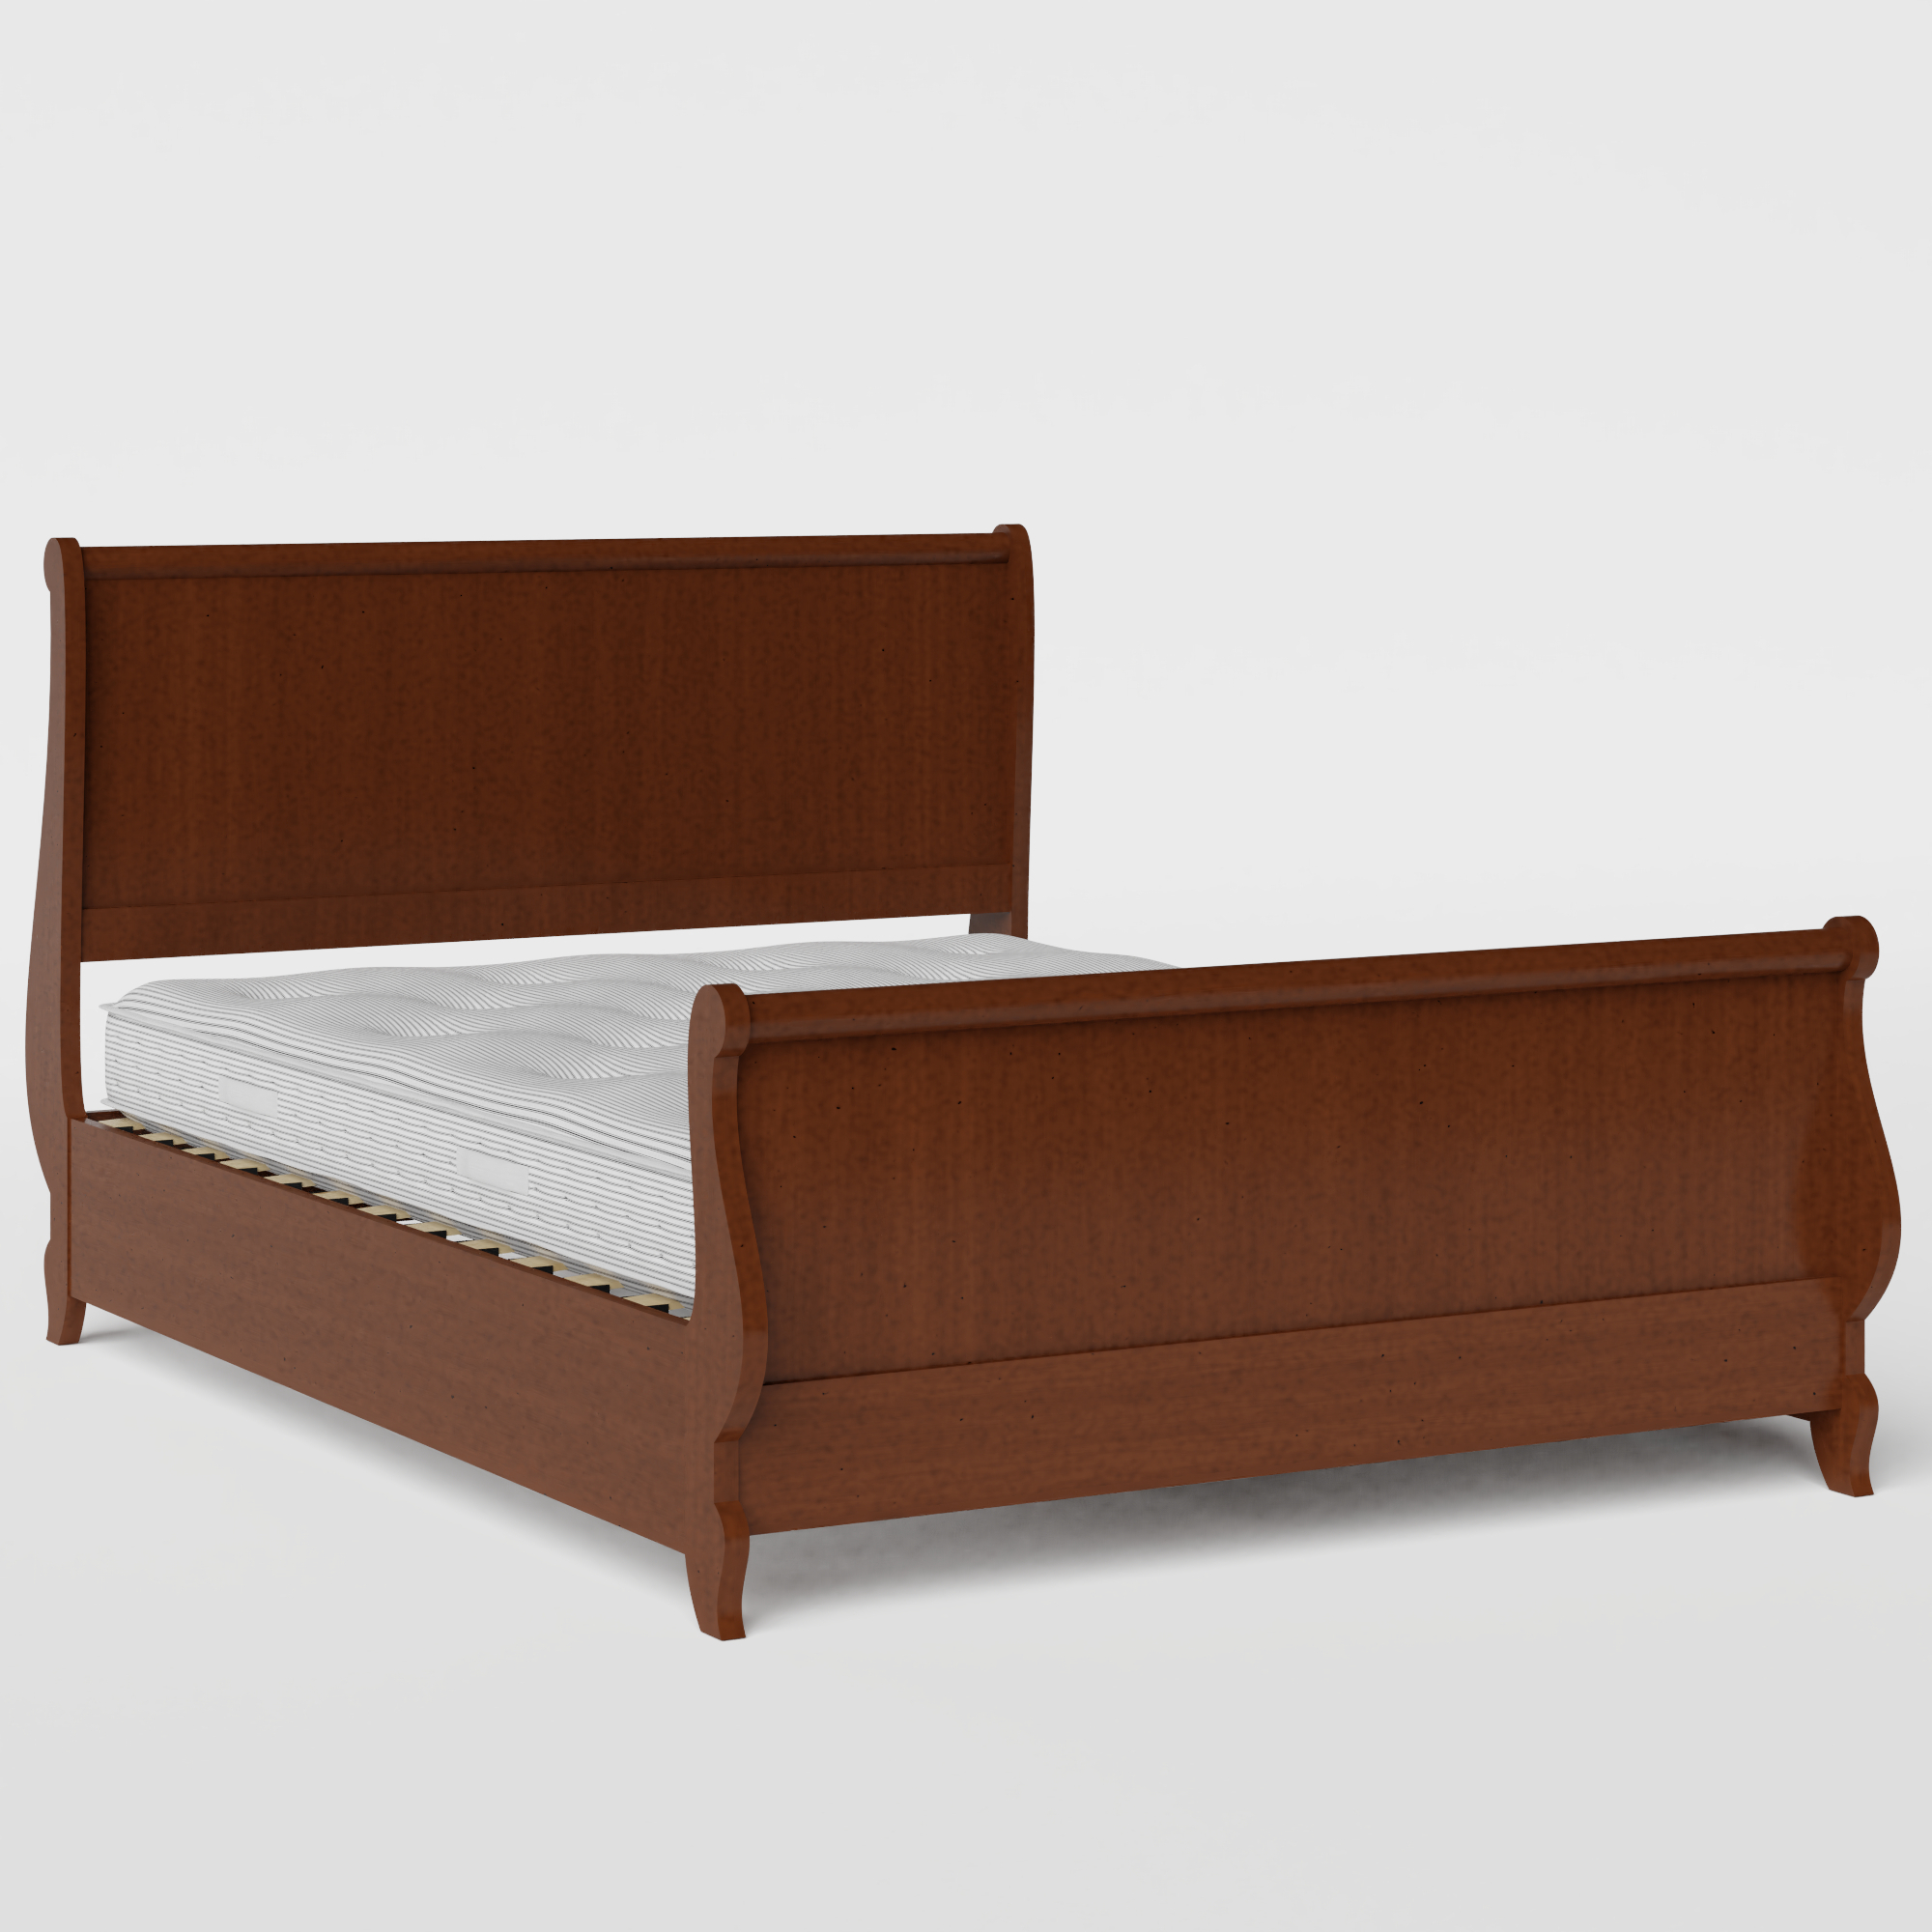 Elliot wood bed in dark cherry with Juno mattress